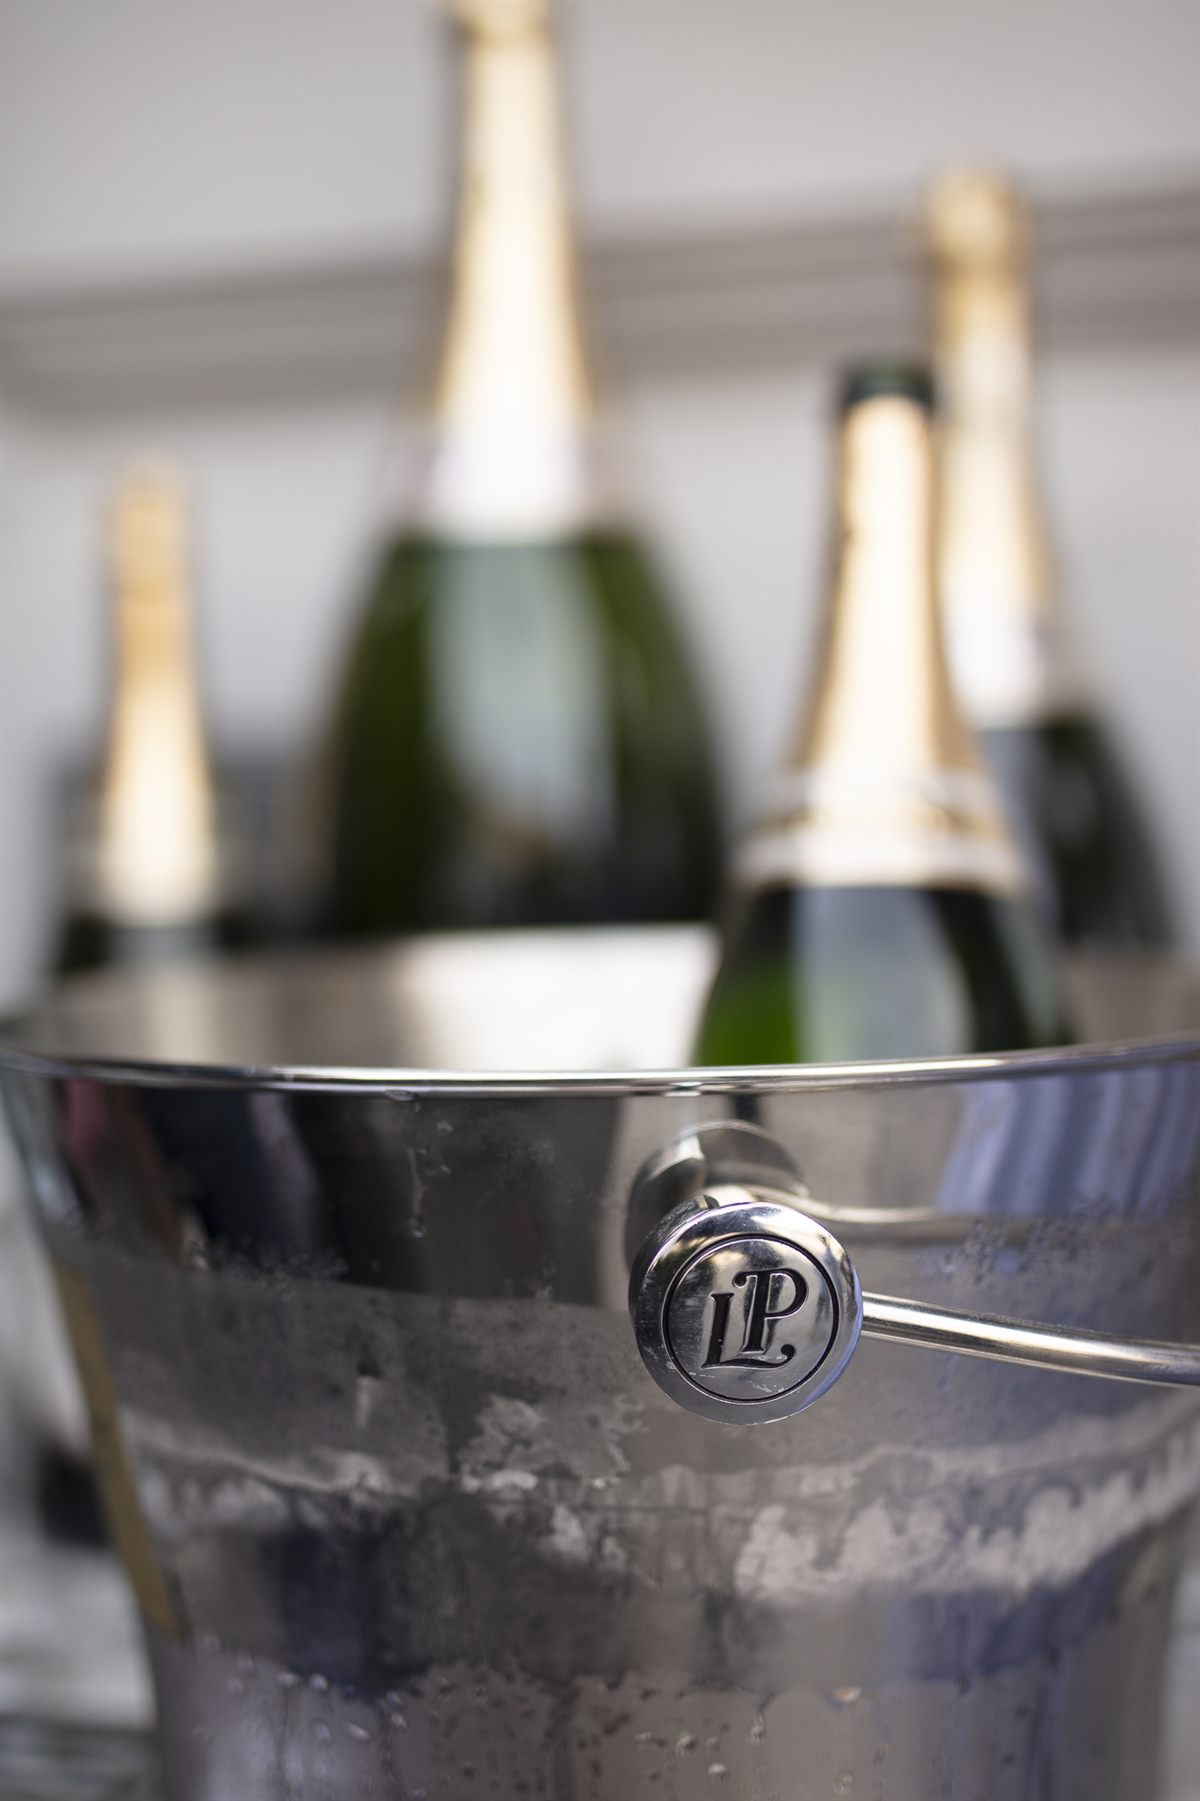 Alphonse Pierlot, einstiger Gründer des heute weltweit renommierten Champagnerhauses Laurent Perrier, hätte mit der Sommerterrasse der Le Bar durchaus seine Freude